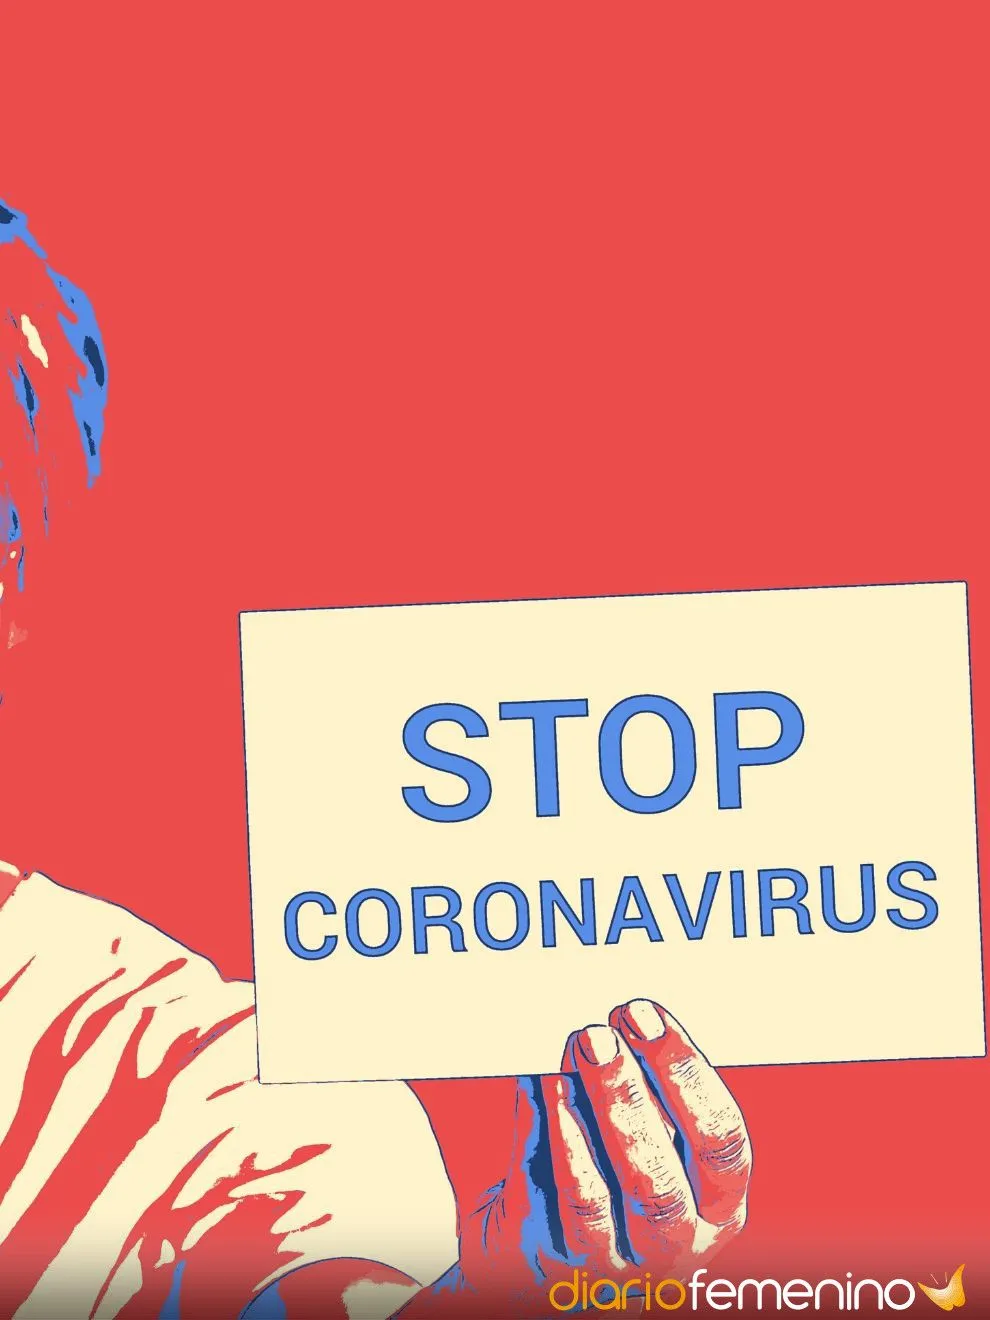 27 frases de ánimo para afrontar el coronavirus: mensajes de esperanza